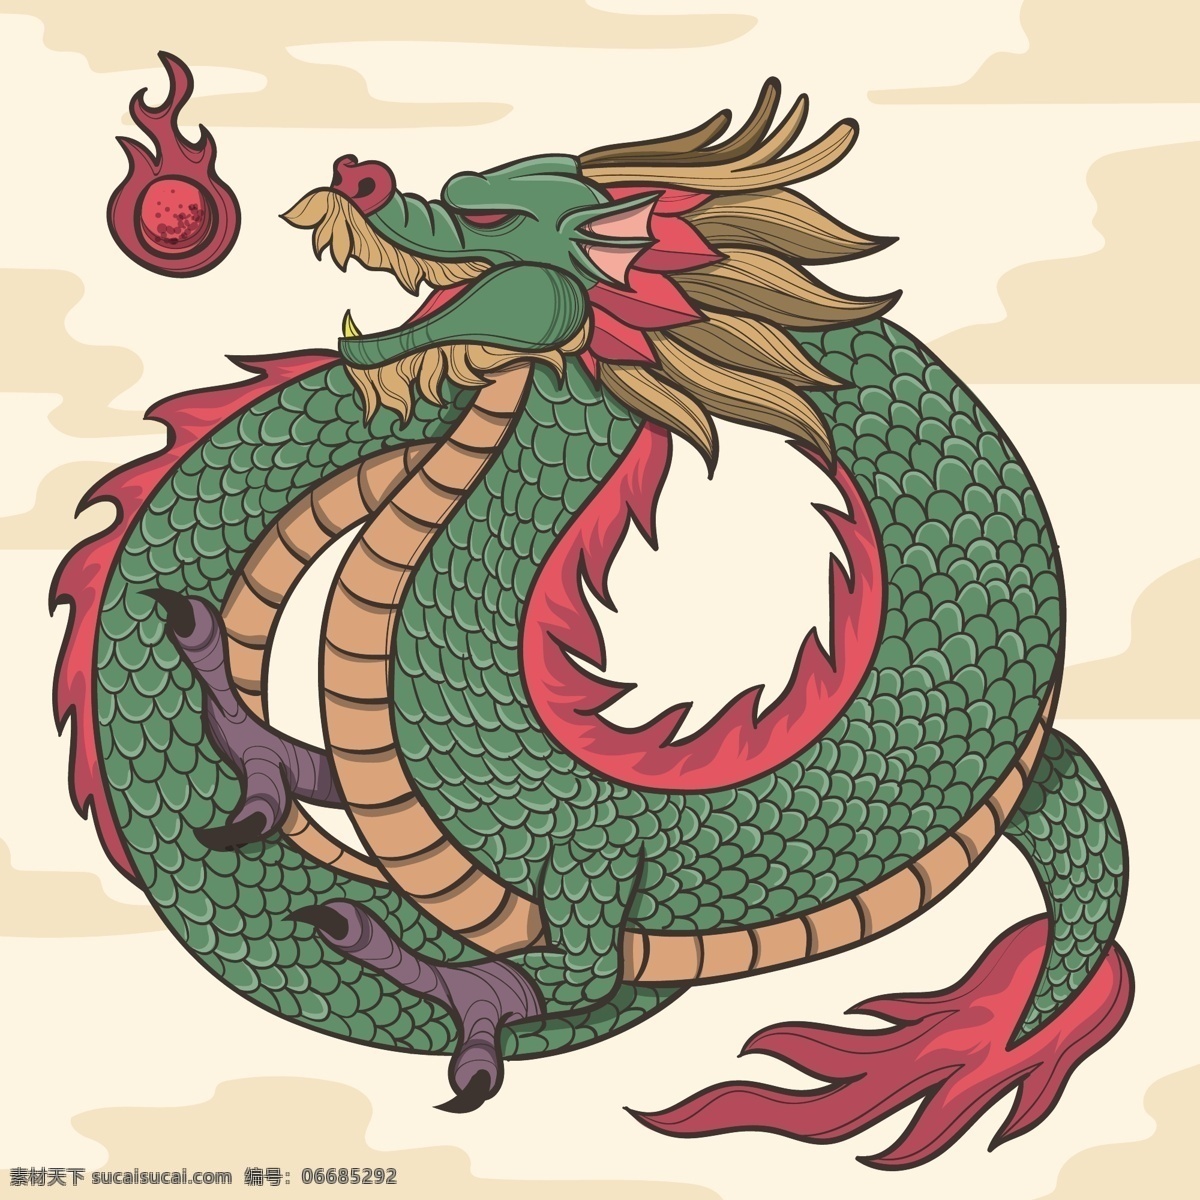 中国龙 龙 神龙 西方龙 手绘神龙 龙图腾 飞龙 生物世界